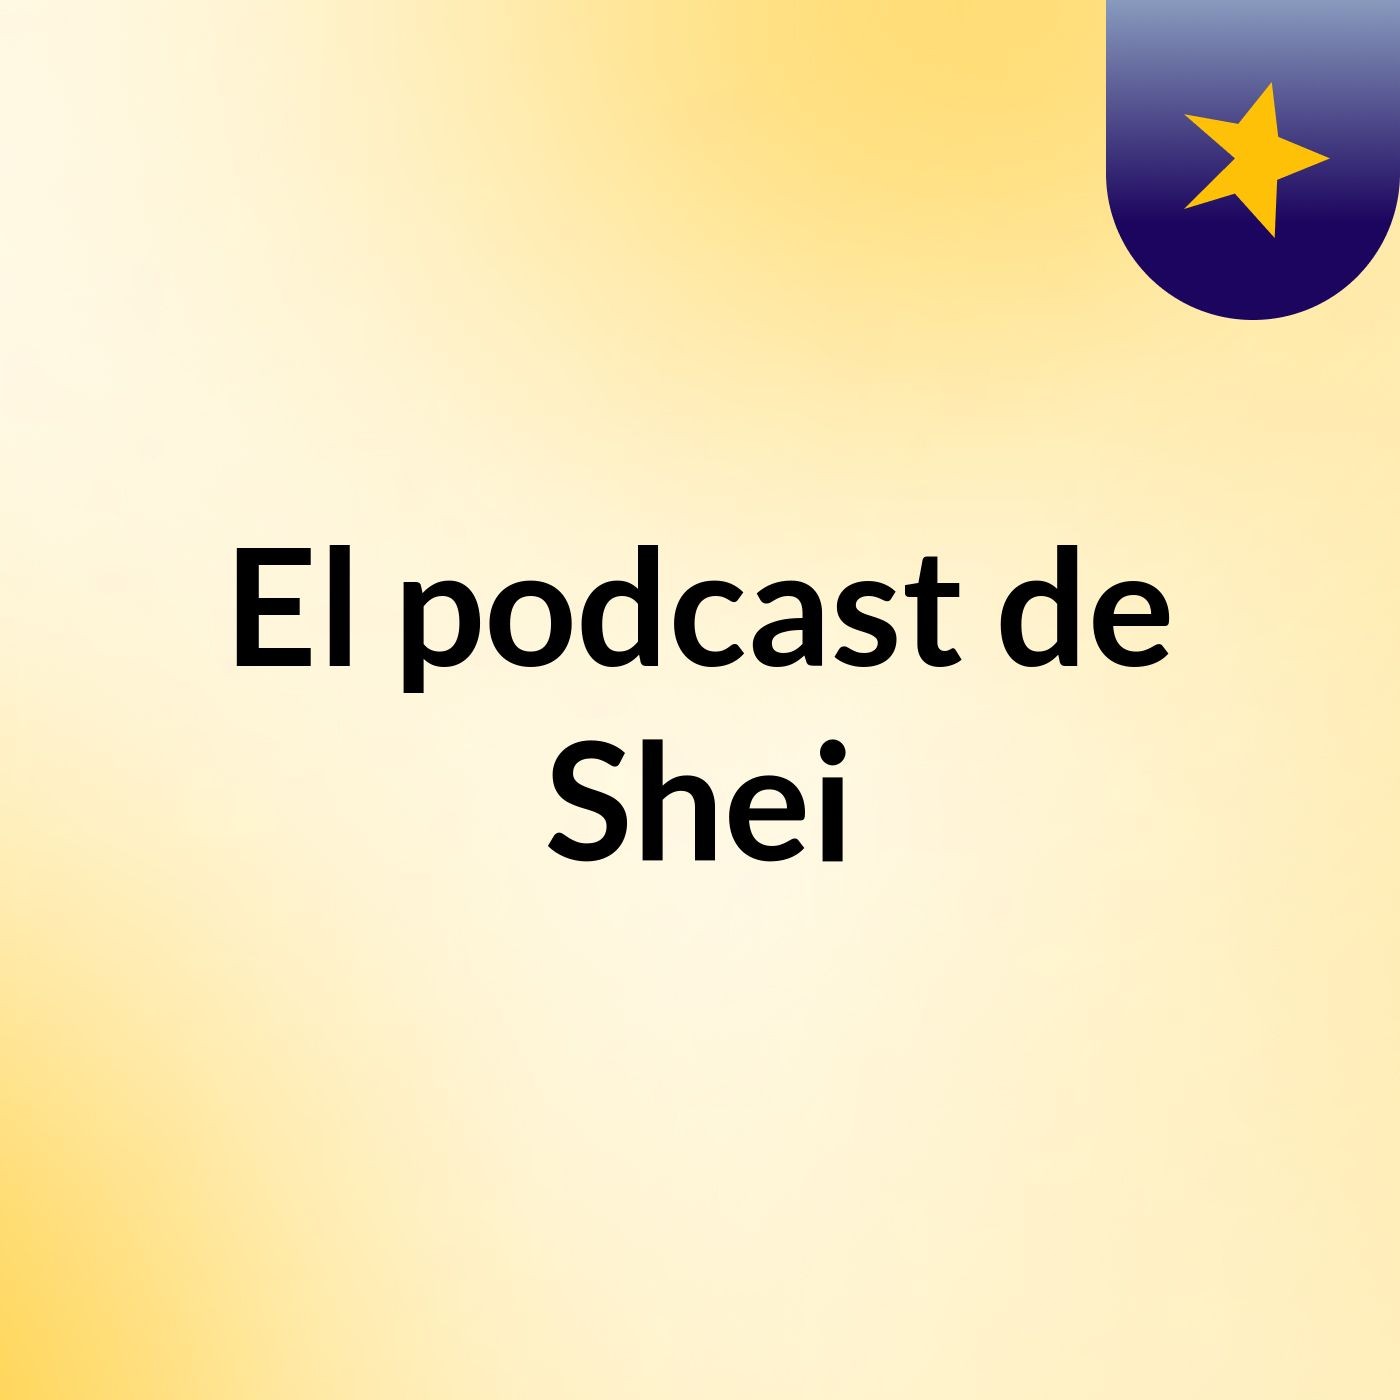 El podcast de Shei